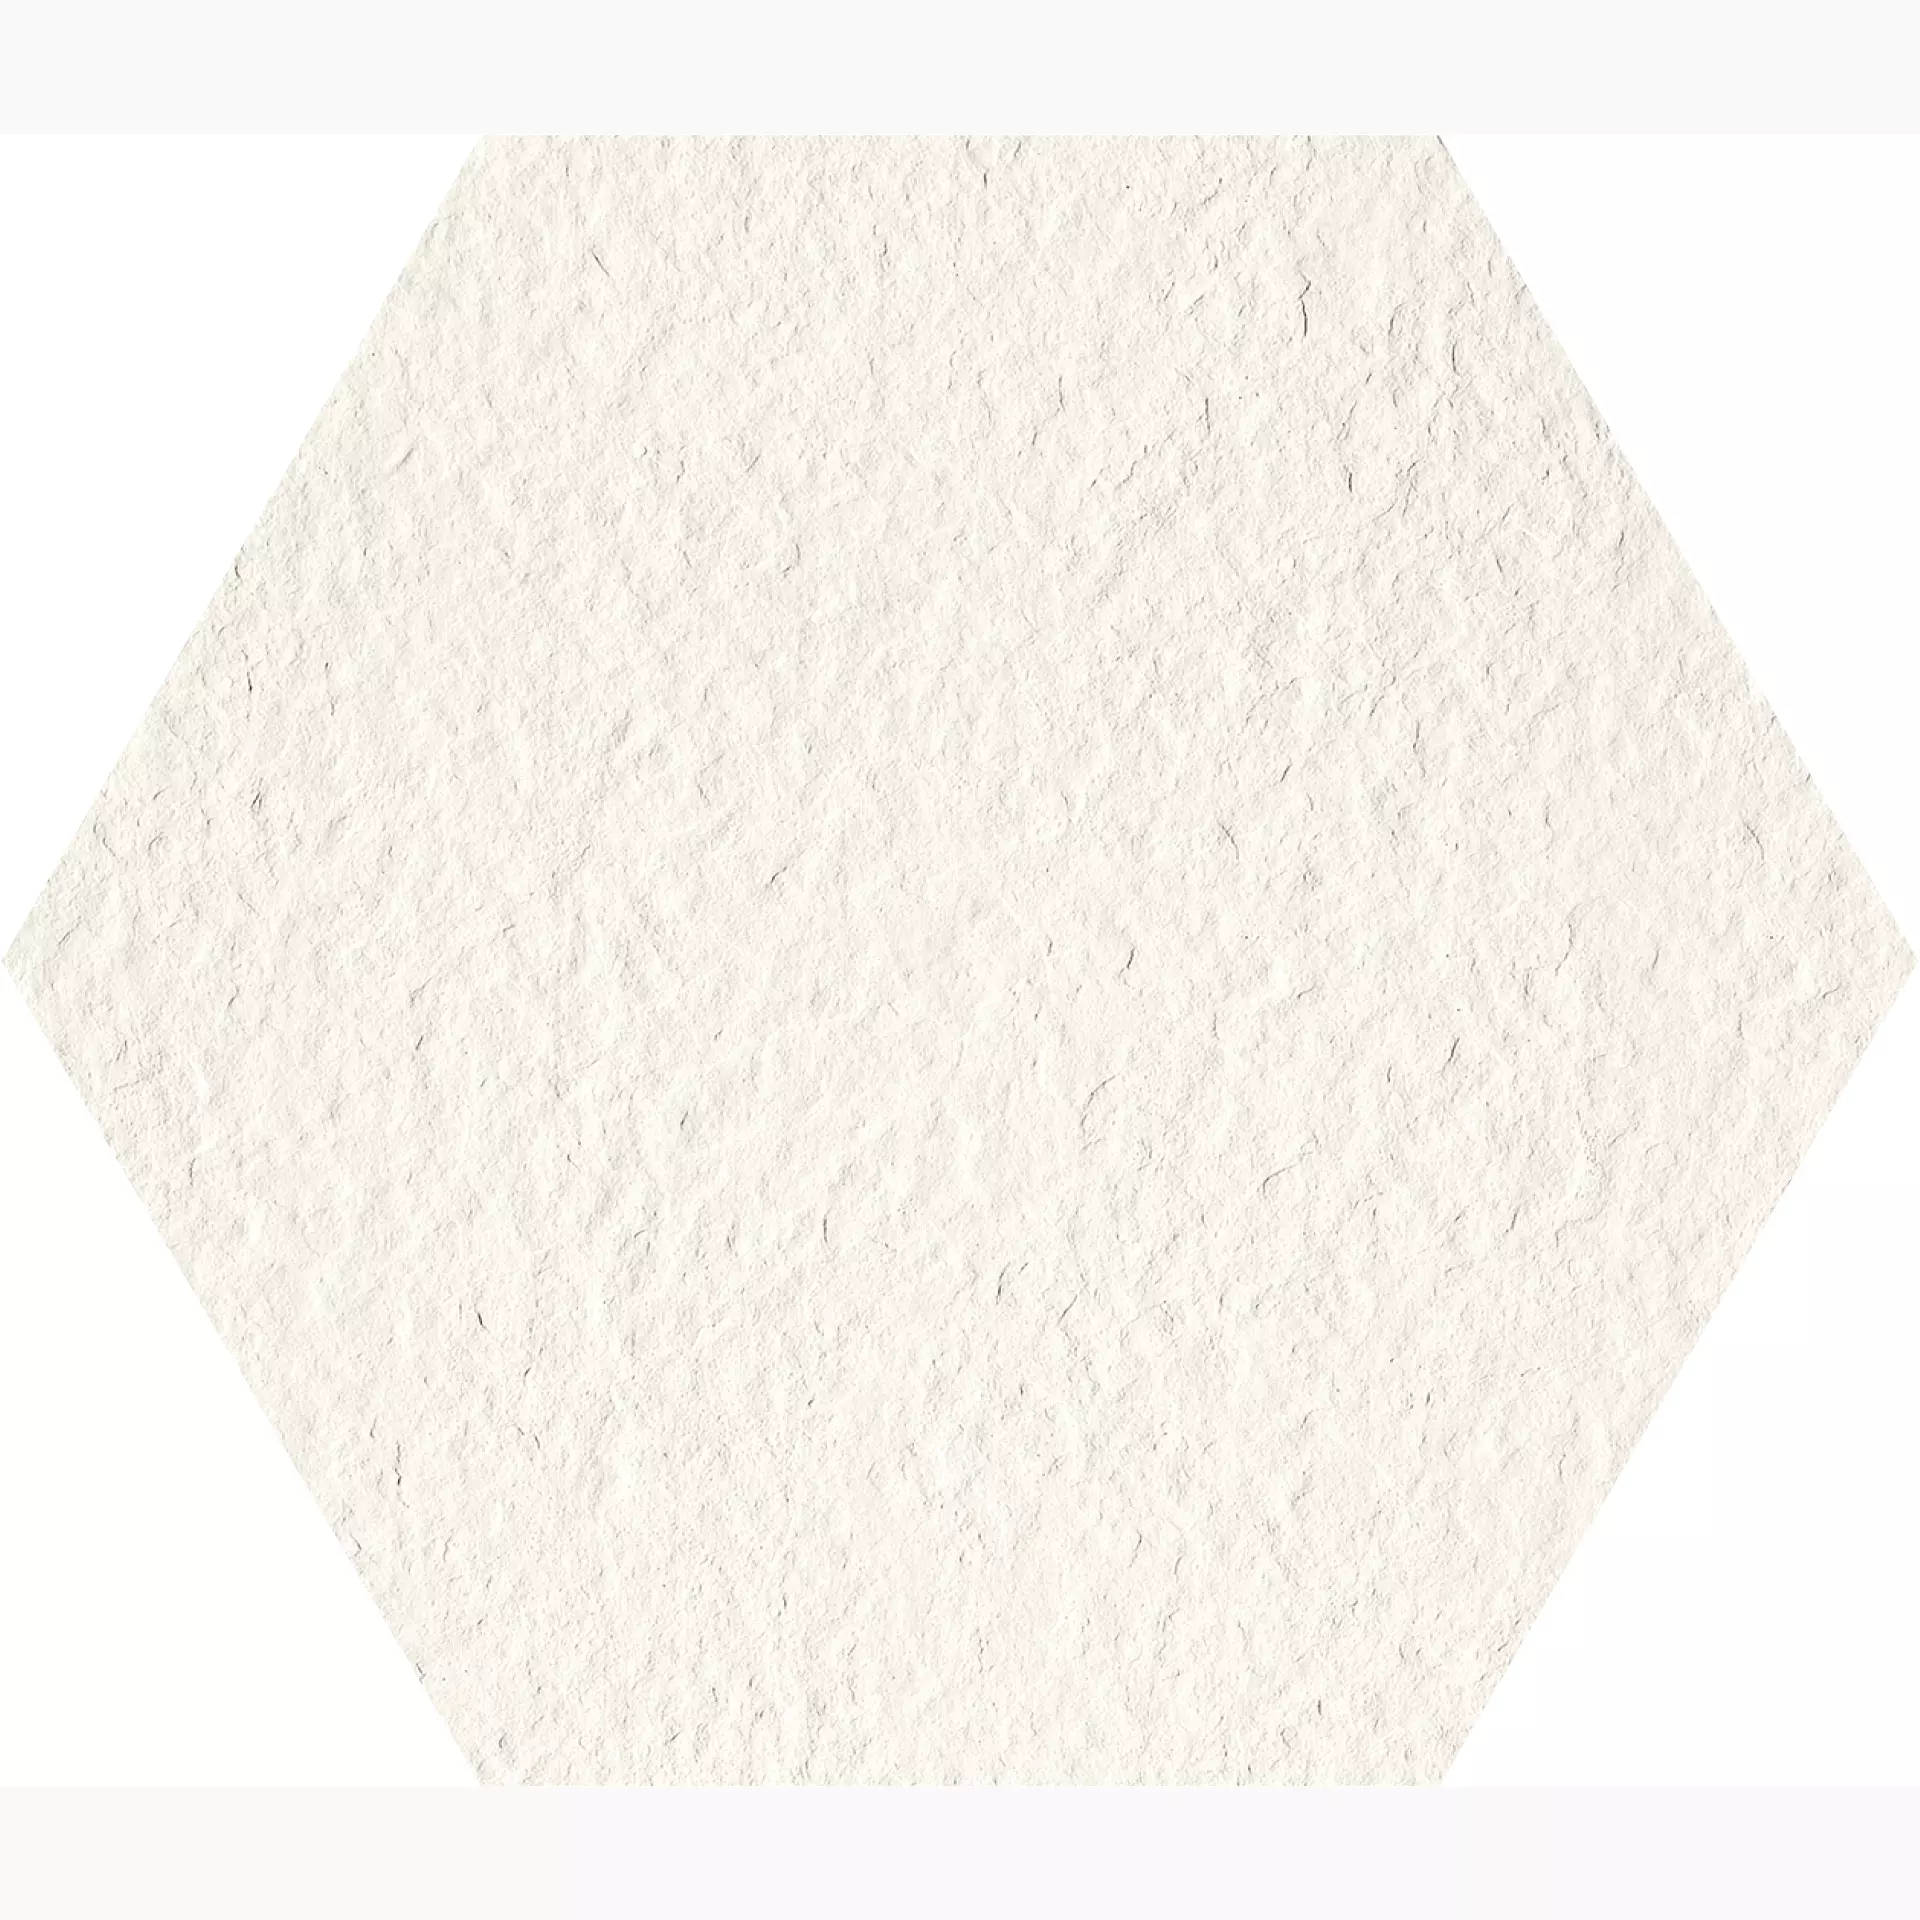 Gigacer Light Bianco Crespo Bianco PO1818ESACRESPO struktur matt 31x36cm Dekor Large Hexagon 6mm